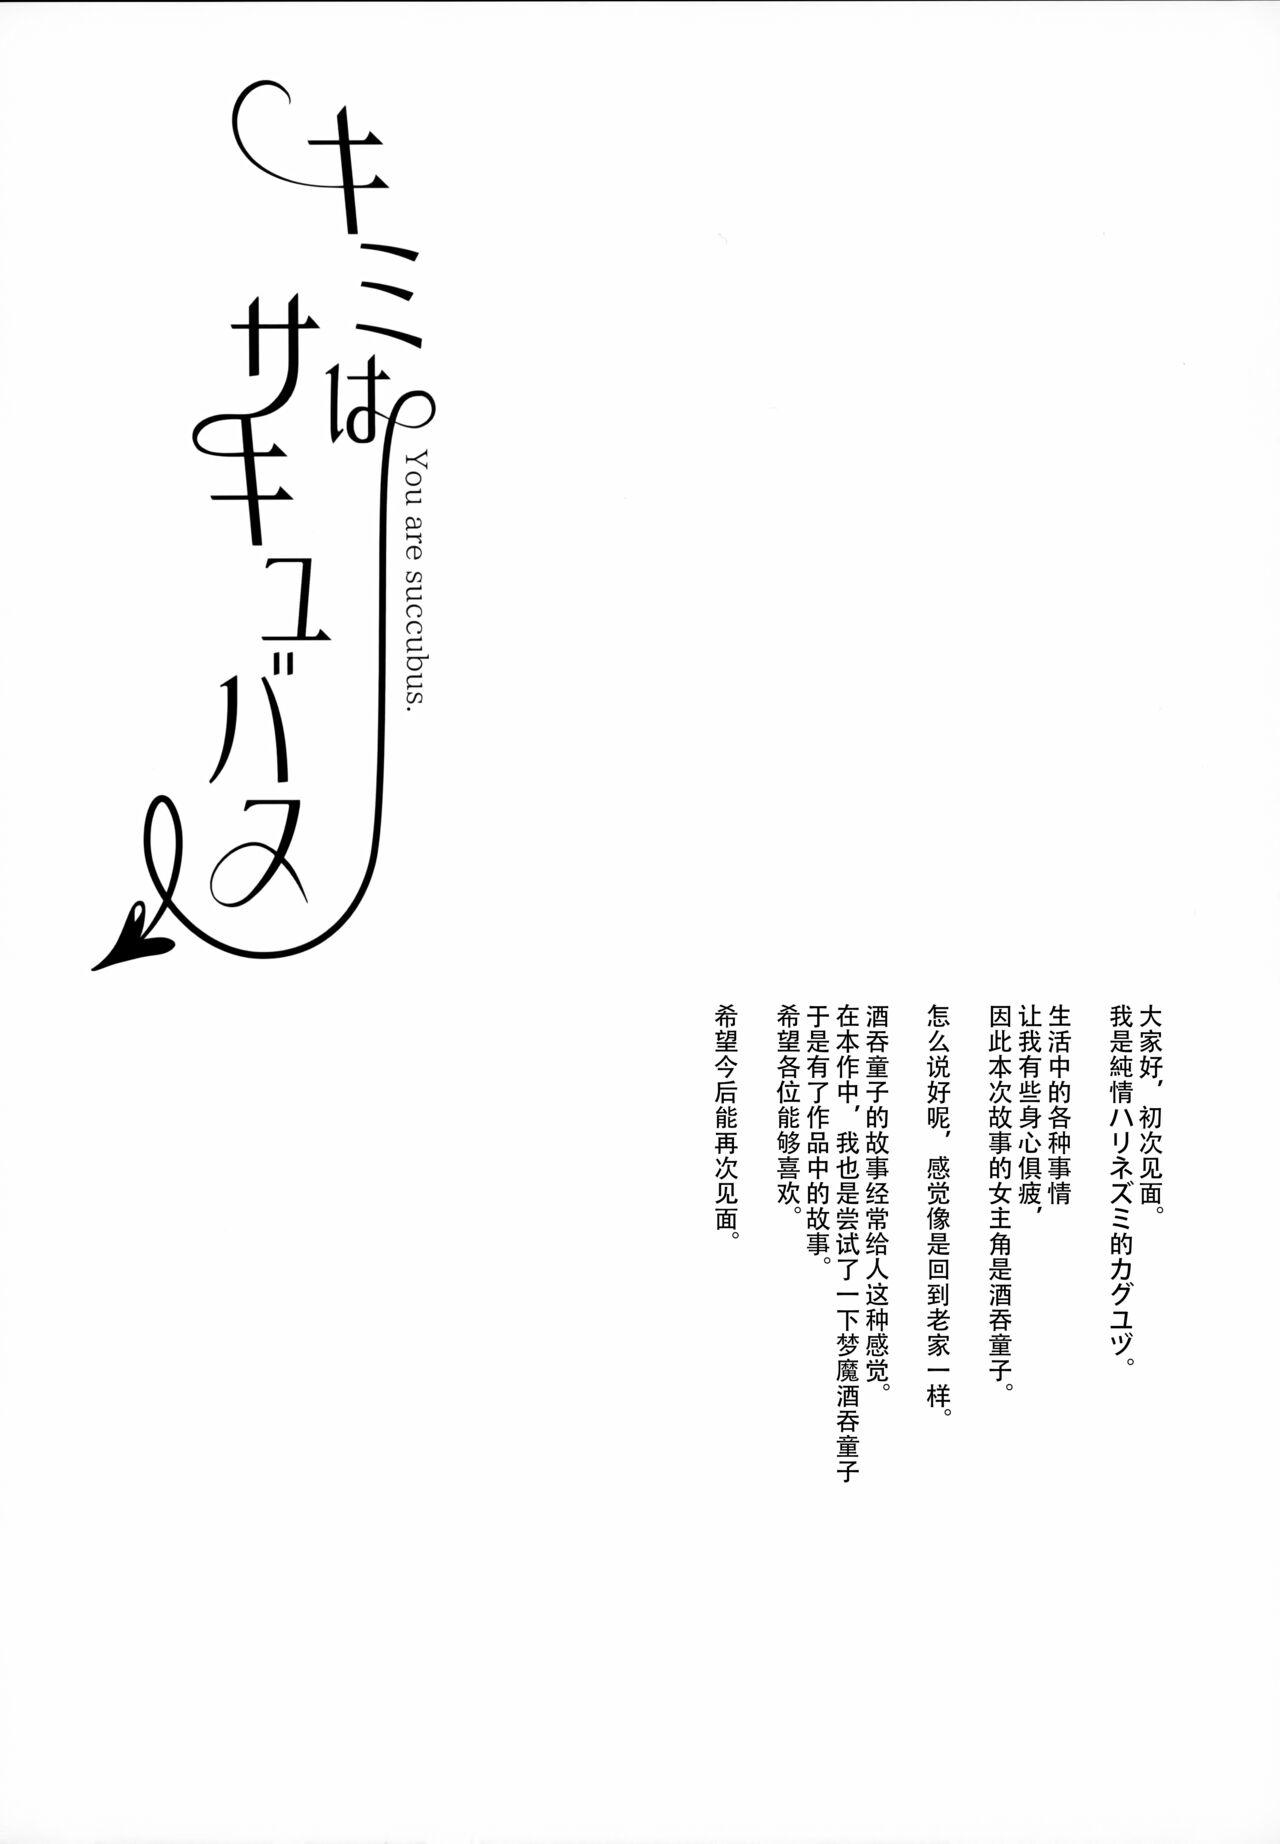 Grande Kimi wa Succubus - Fate grand order Chibola - Page 3